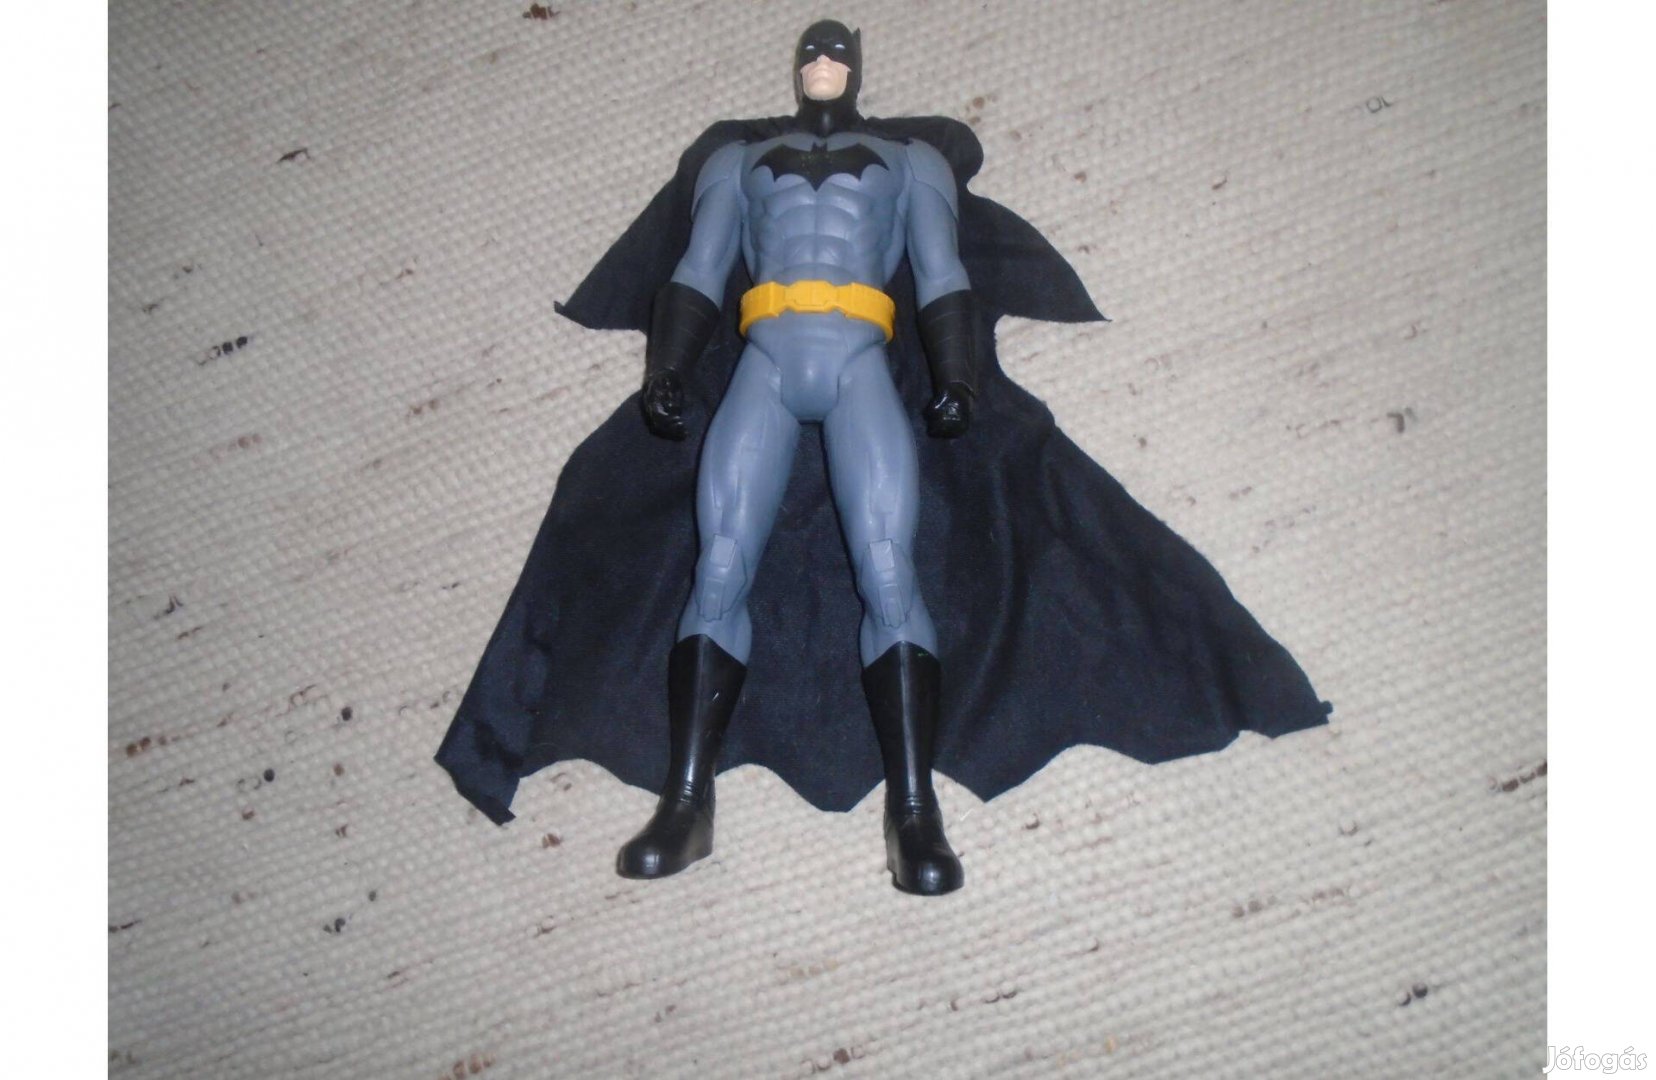 Óriási méretű - 50 cm magas - Batman figura fekete palásttal együtt